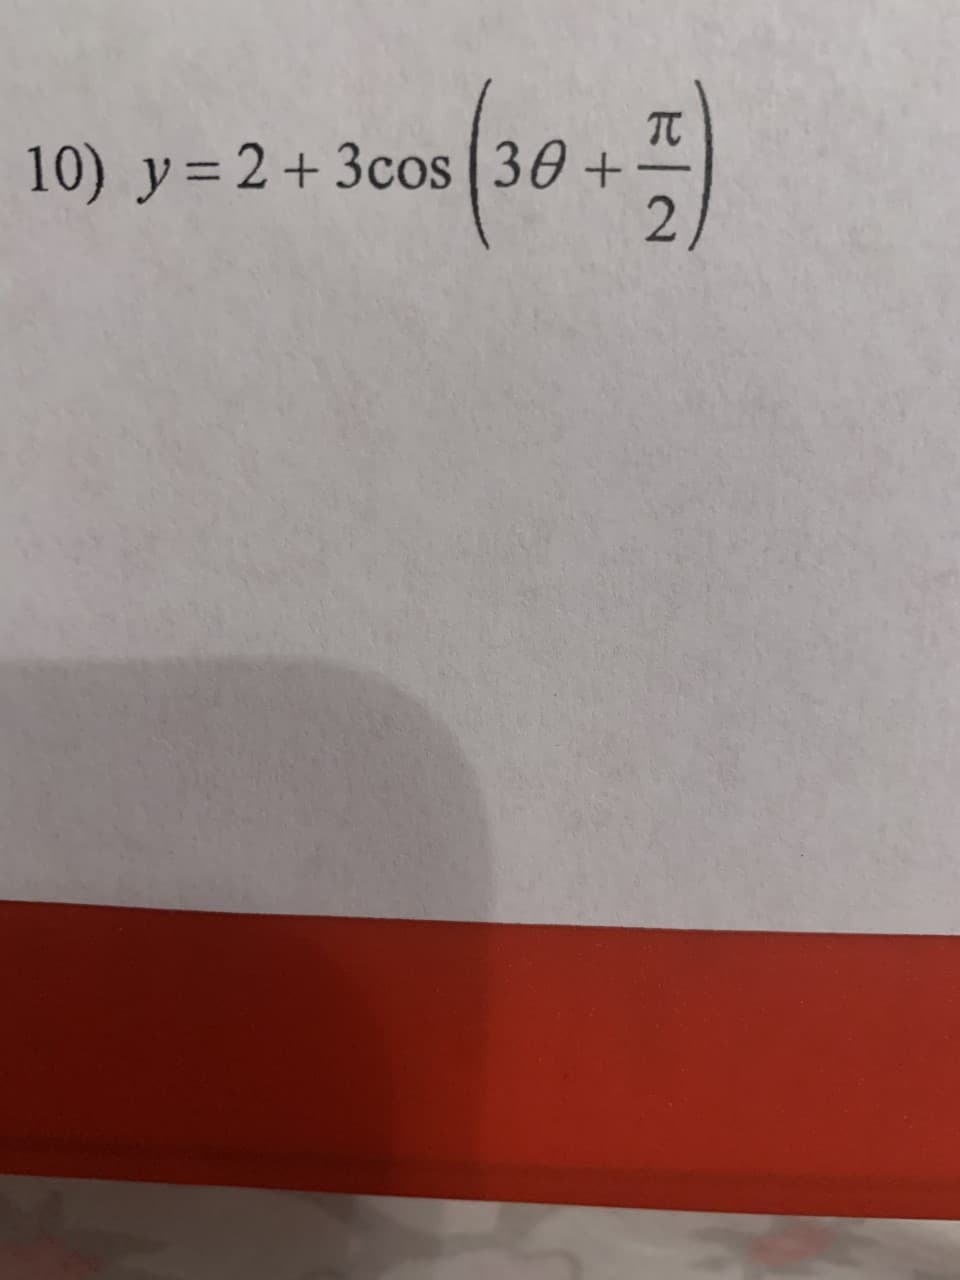 0+
10) y = 2+ 3cos (30
